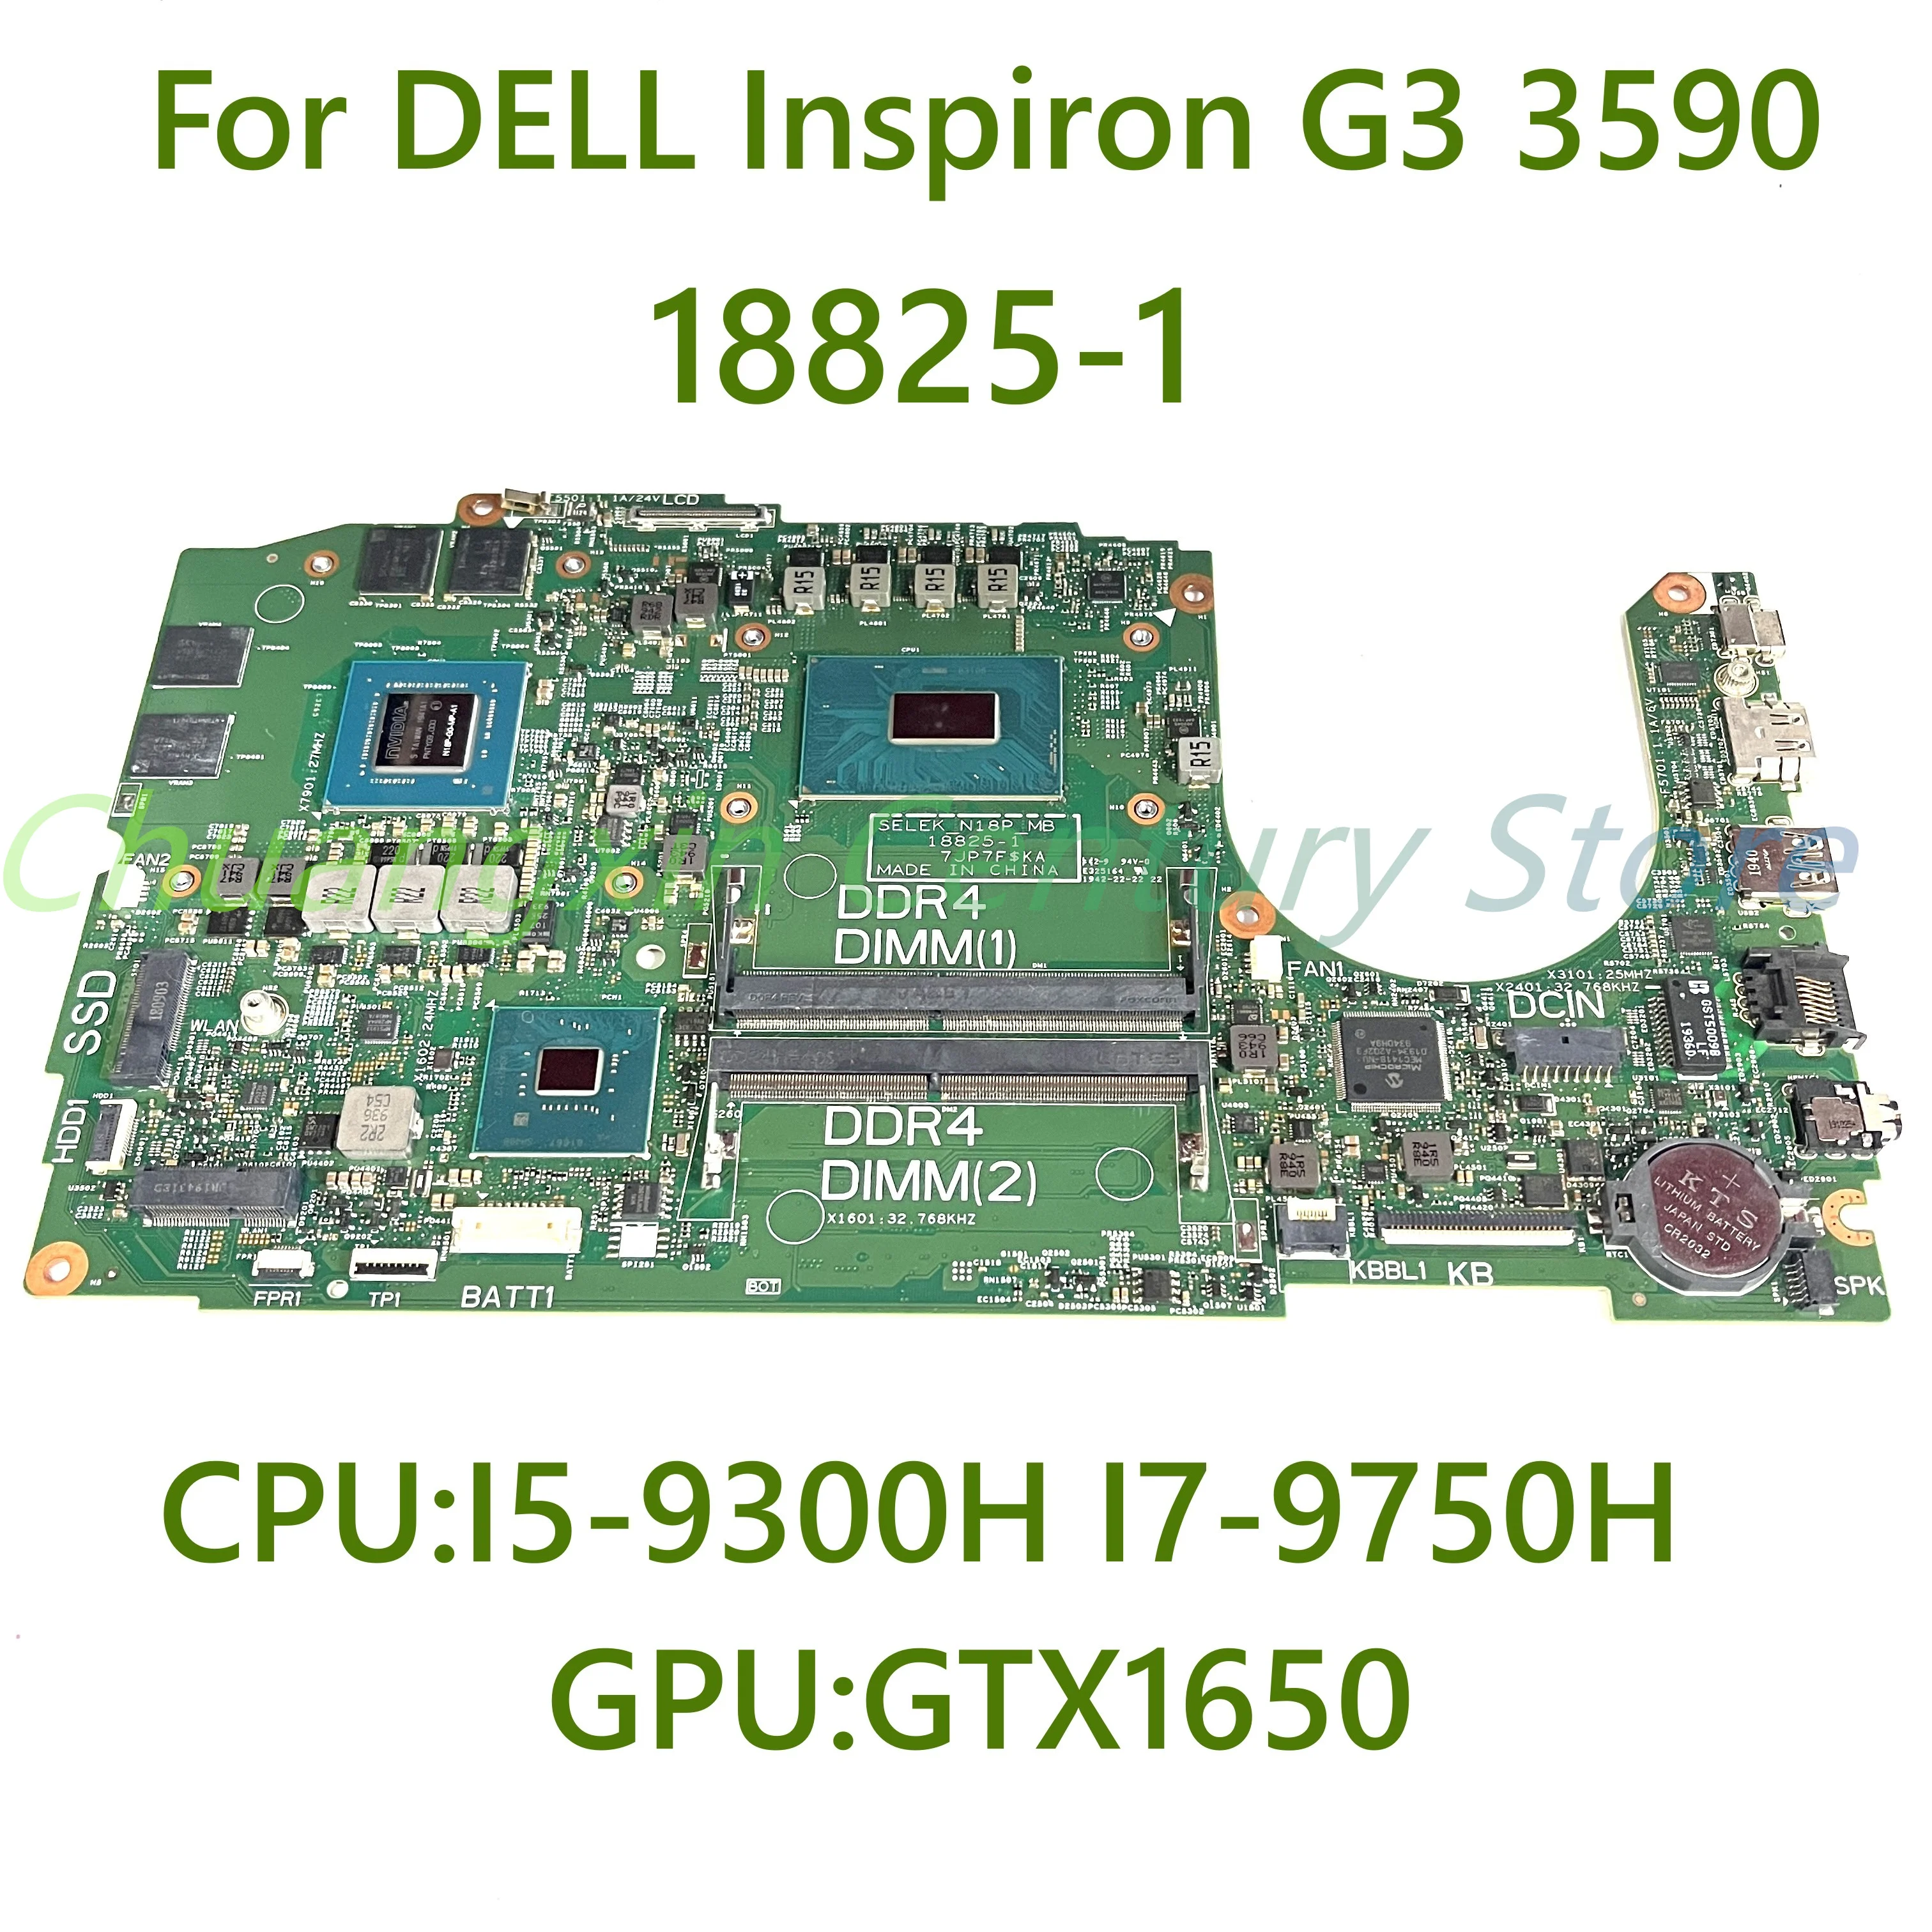 Для DELL Inspiron G3 3590 материнская плата ноутбука 18825-1 с процессором I5-9300H I7-9750H GPU GTX1650 DDR4 100% Протестирована, Полностью Работает